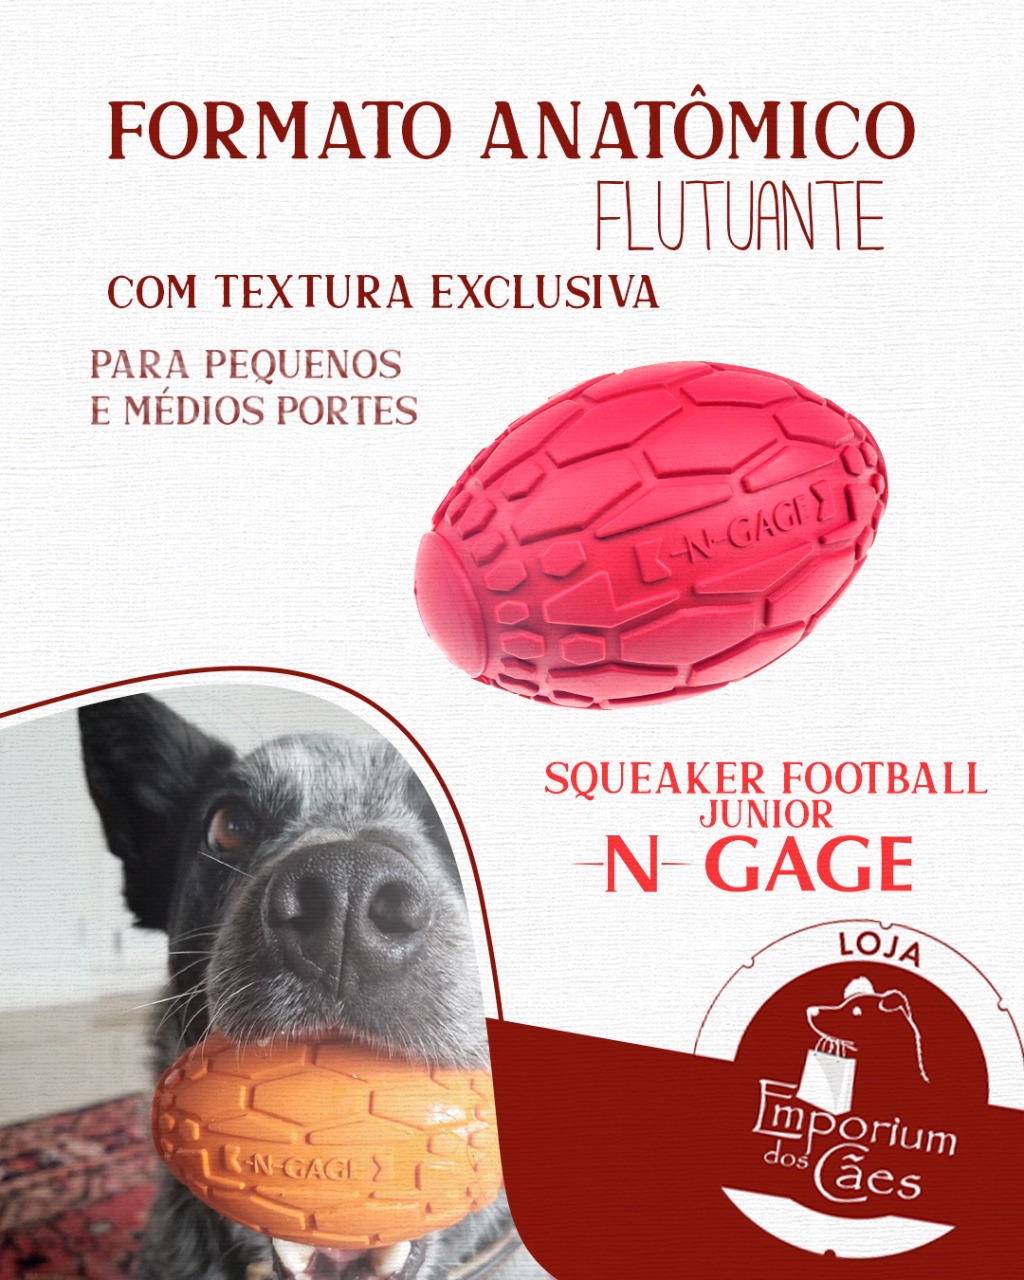 N-Gage Squeaker Football Junior - Bola de Futebol Americano de Borracha com Apito - Tamanho PEQUENO